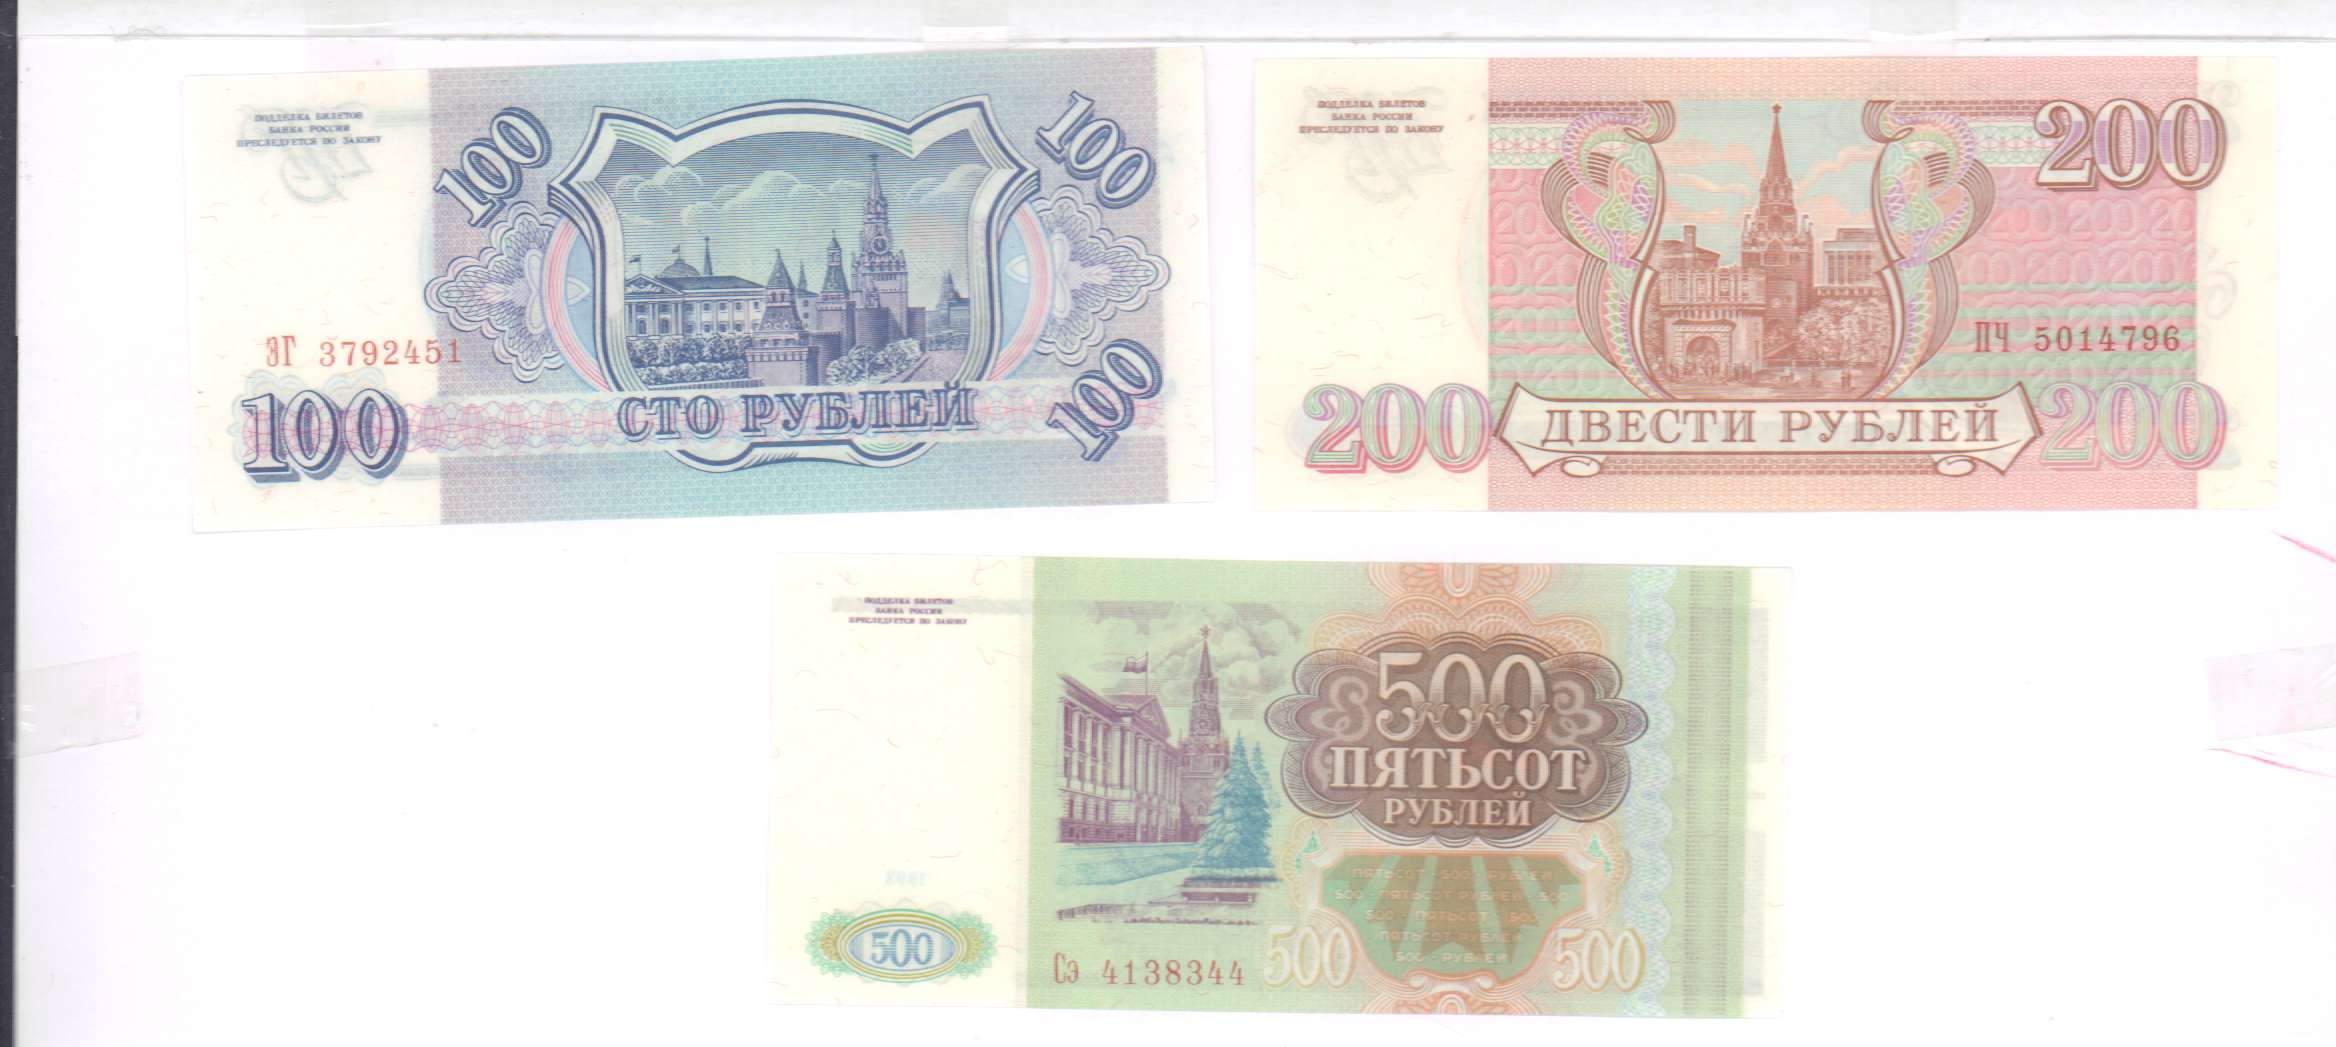 80 в рублях на сегодня. 100 Рублей 1993 Аверс-Аверс. 100 Рублей 3 штуки. 500 Рублей 3 штуки. Как выглядят билеты банка России с кюаркодом.